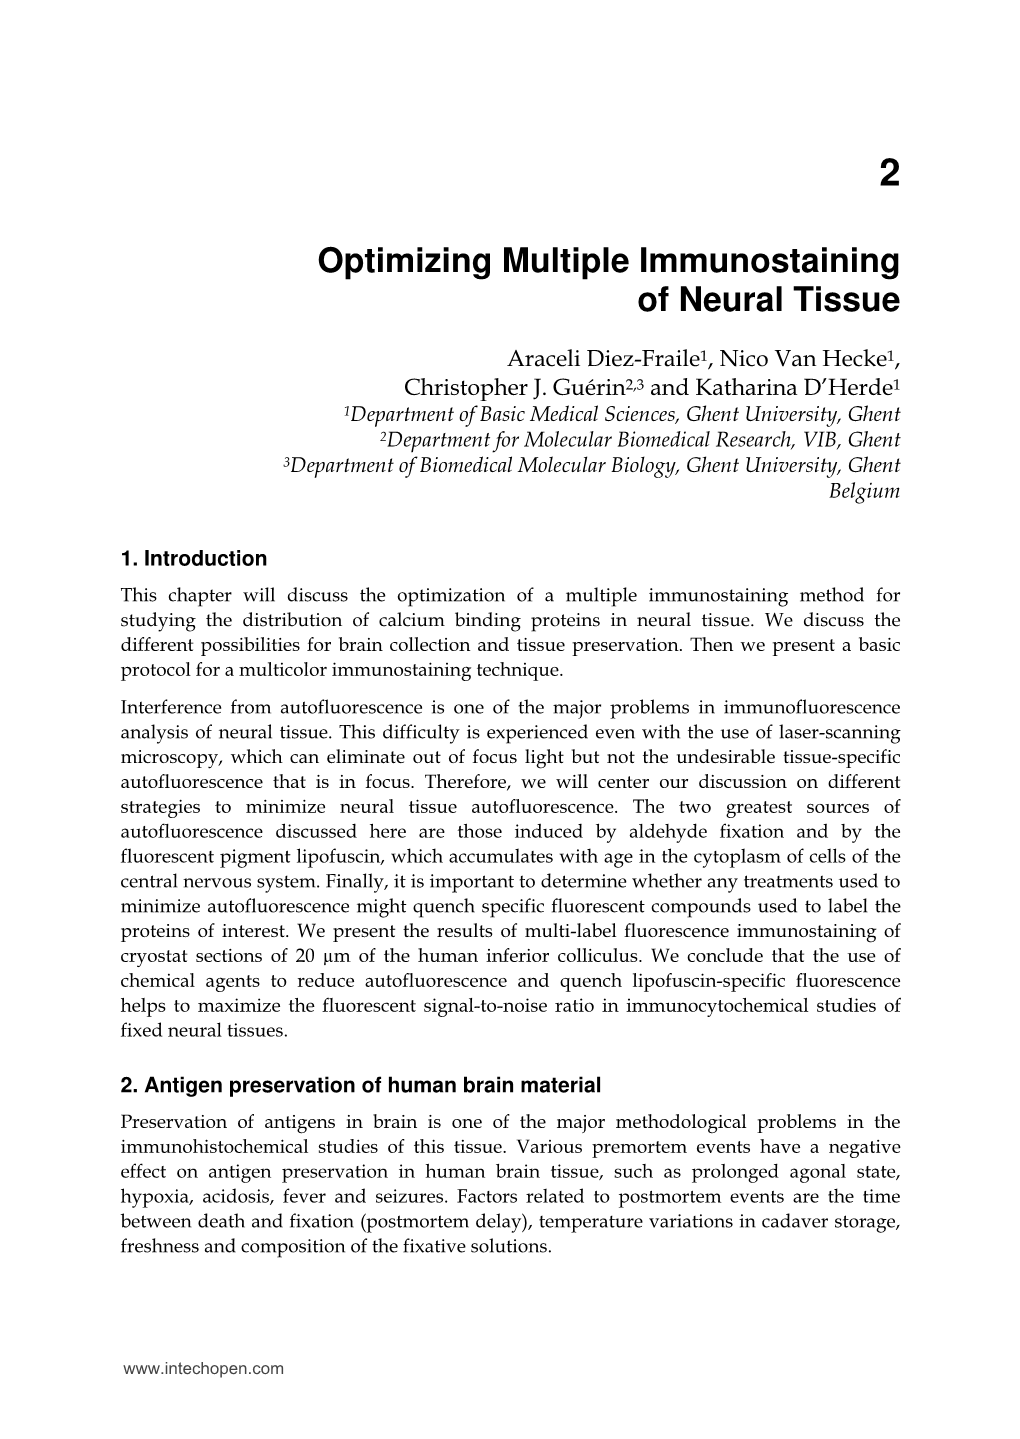 Optimizing Multiple Immunostaining of Neural Tissue